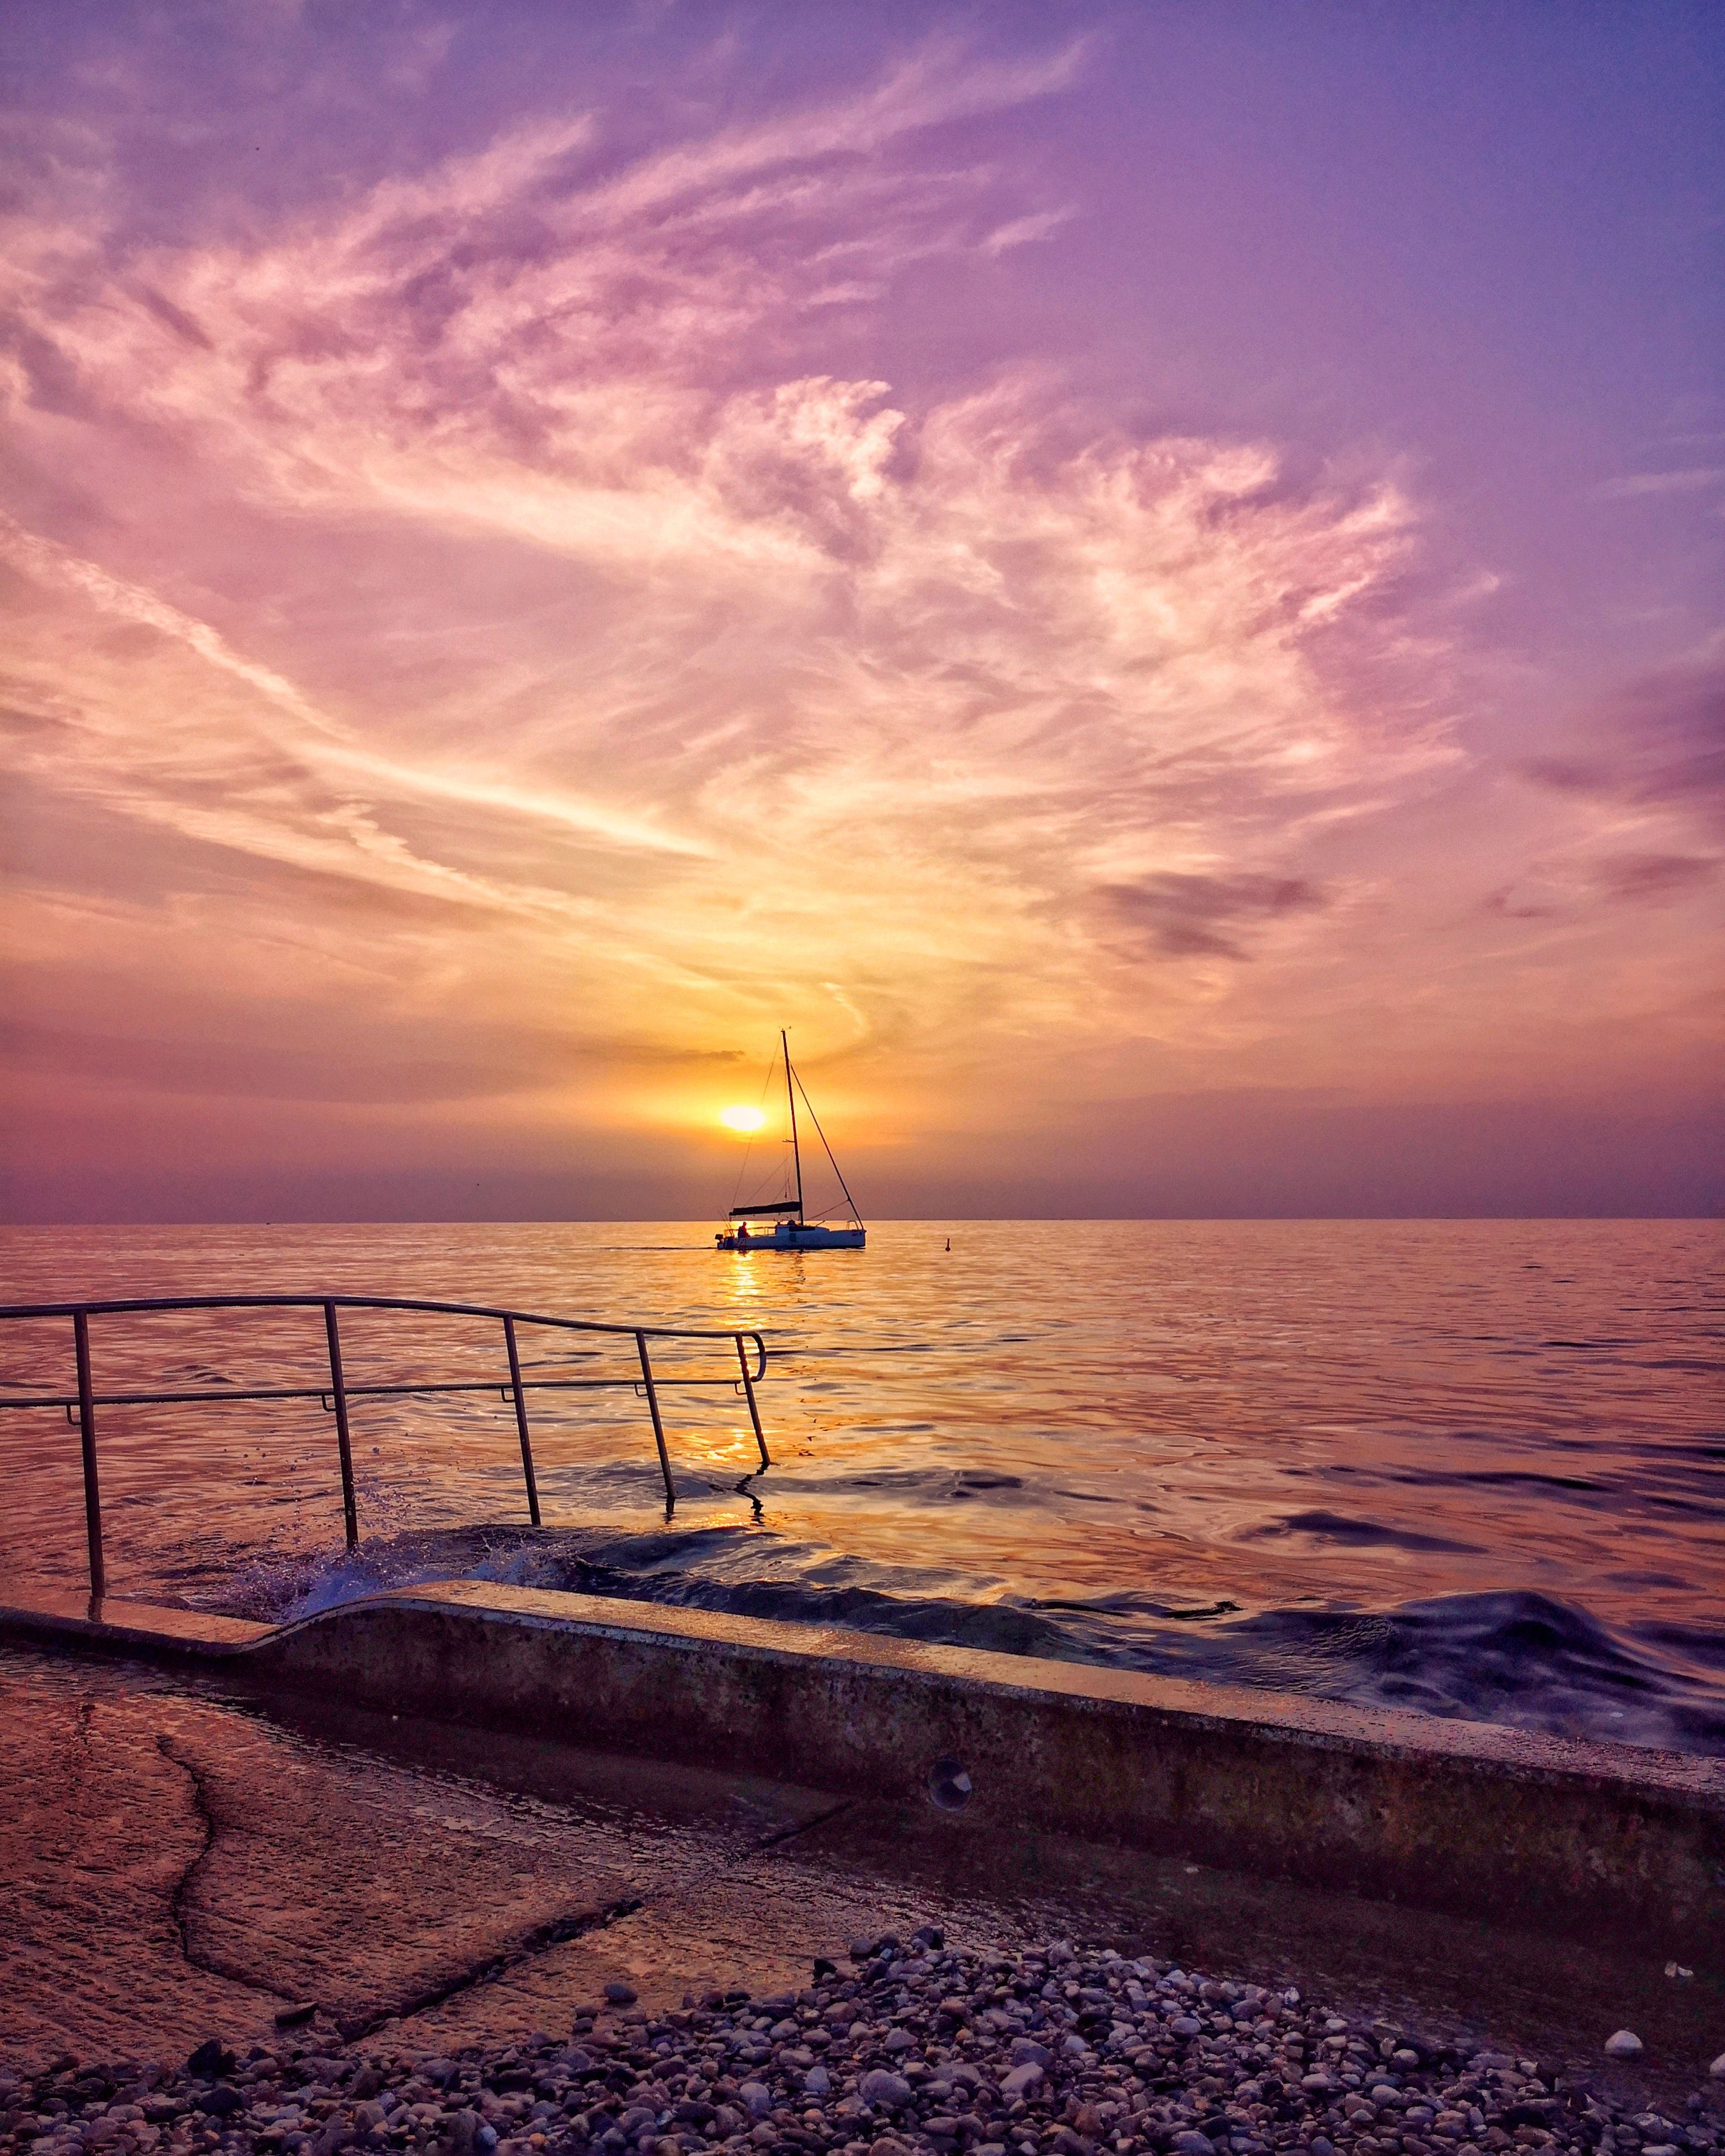  Sonnenuntergang Hintergrundbild 2976x3720. 100.Sonnenuntergang Strand Bilder Und Fotos · Kostenlos Downloaden · Stock Fotos